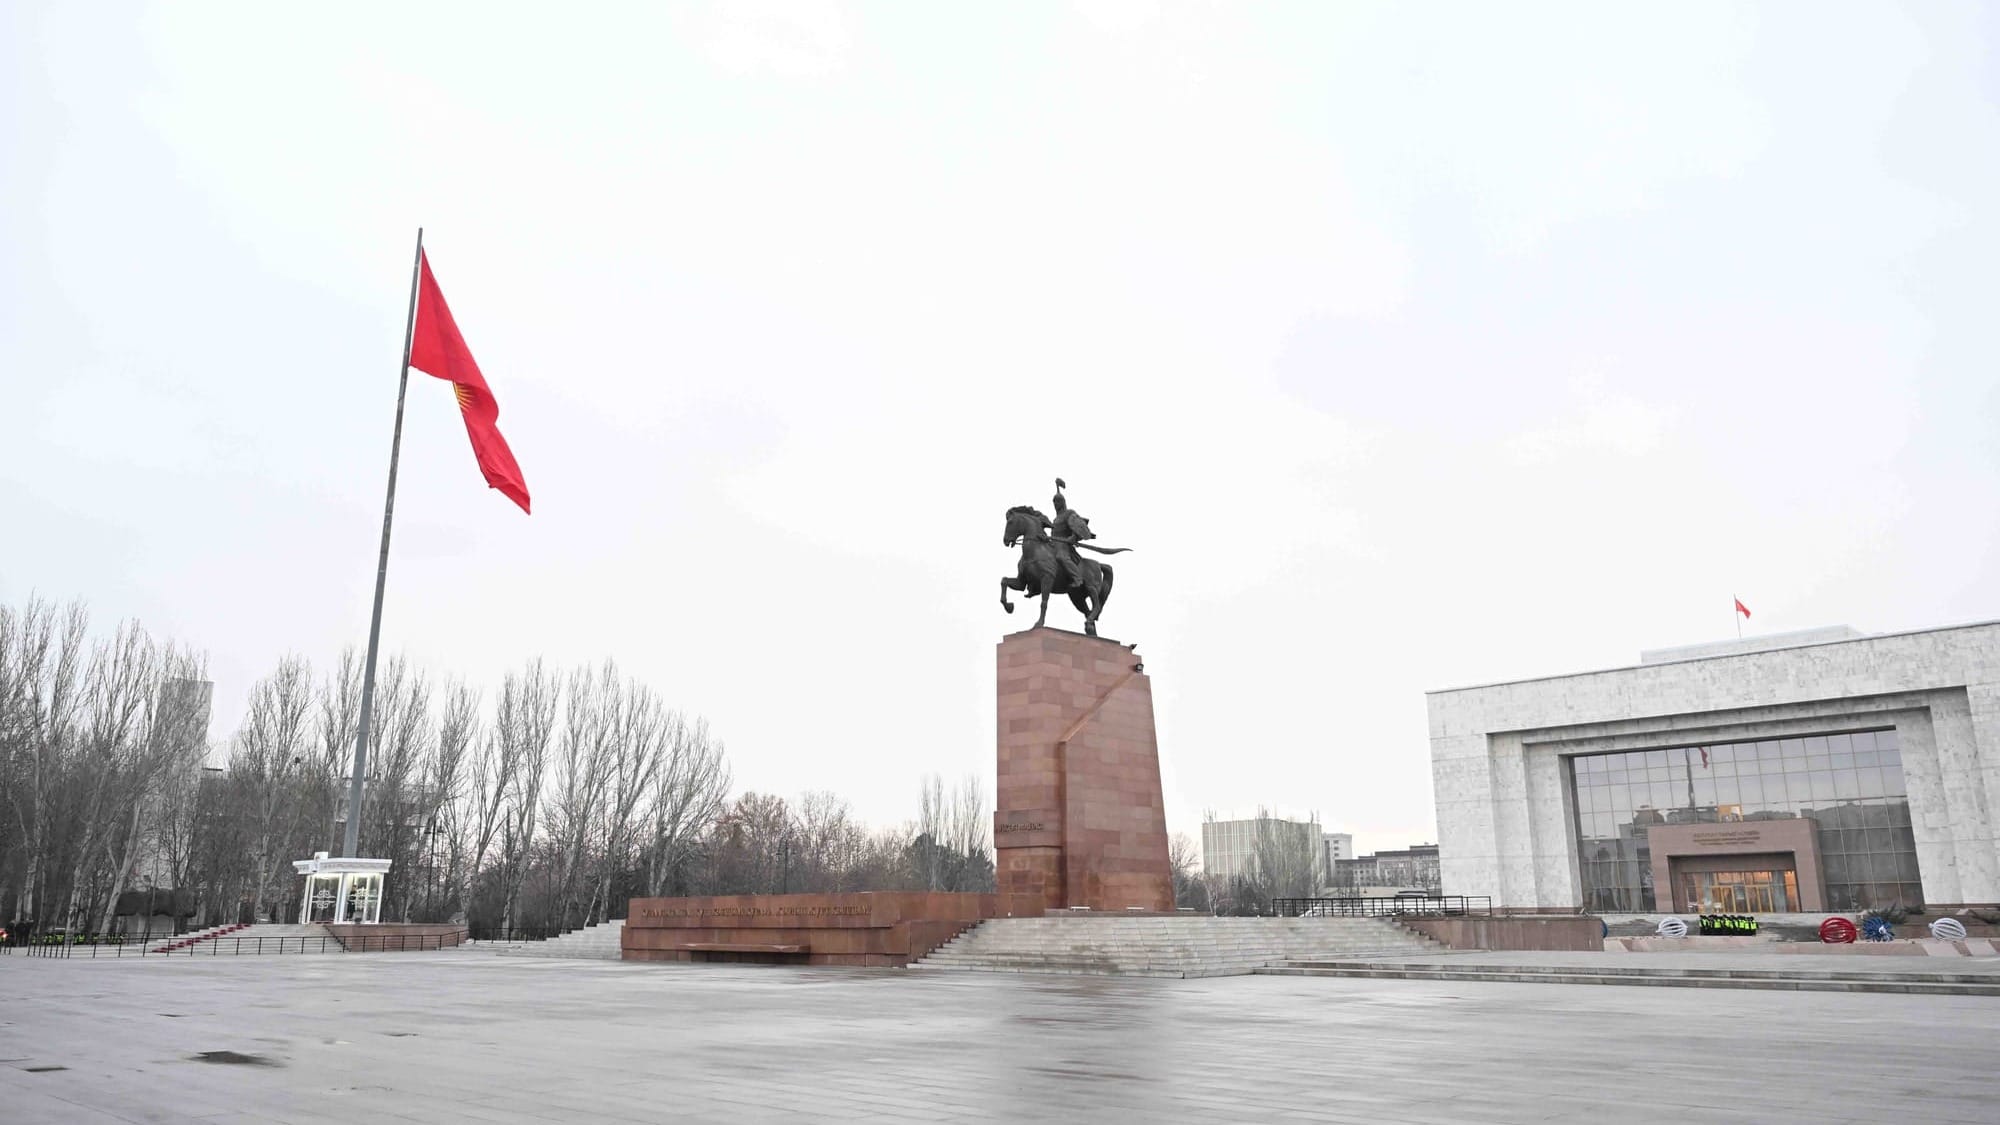 Кыргызстанцы обеспокоены материальным положением и остерегаются крупных покупок — исследование